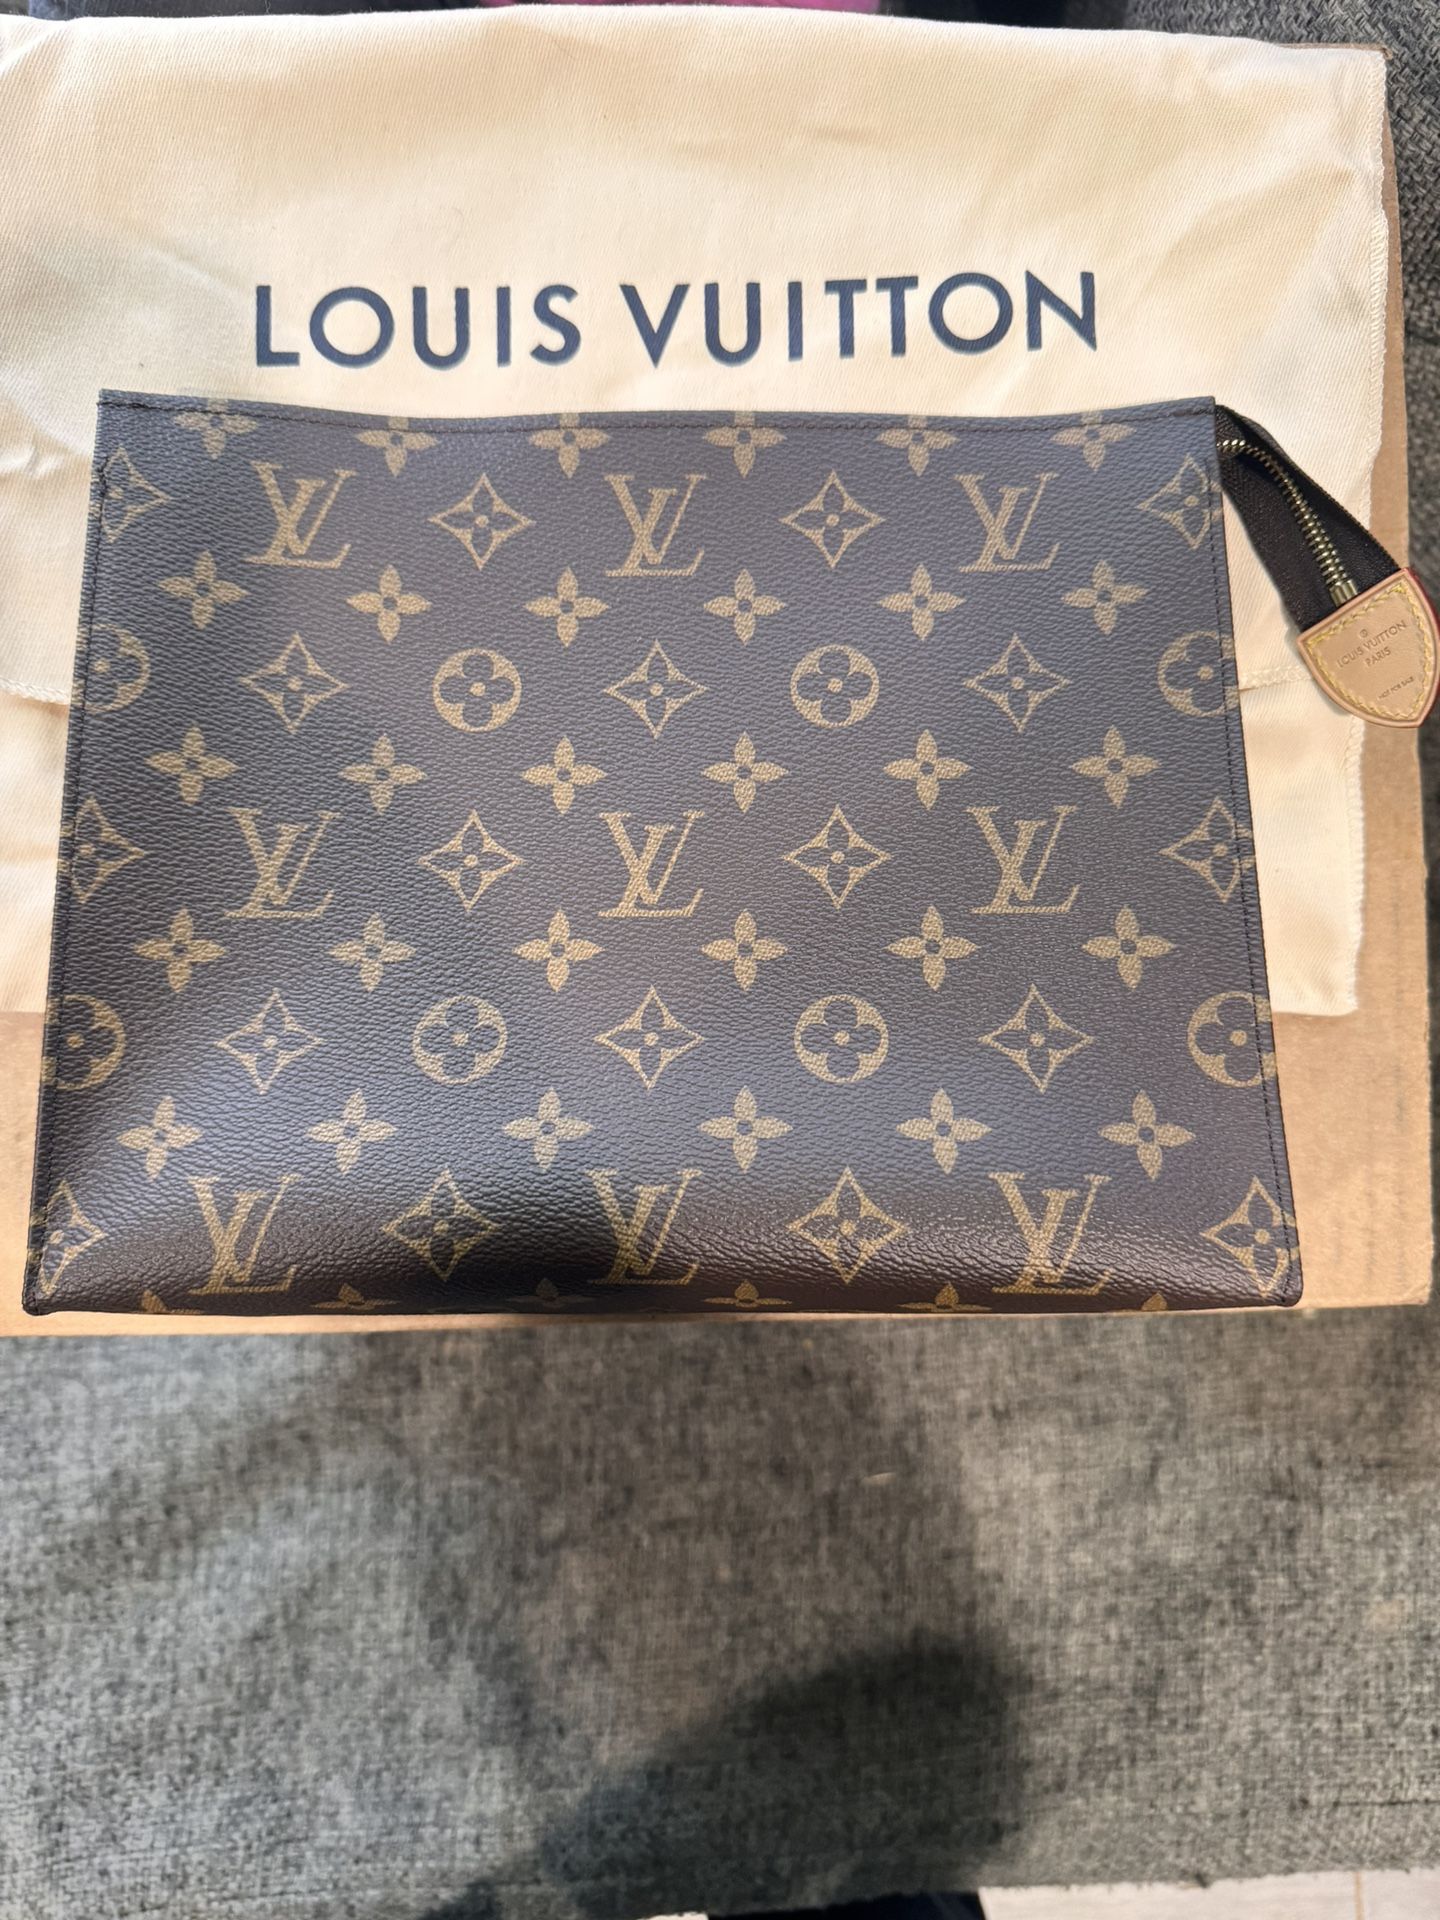 New Authentic Louis Vuitton Toiltry Bag